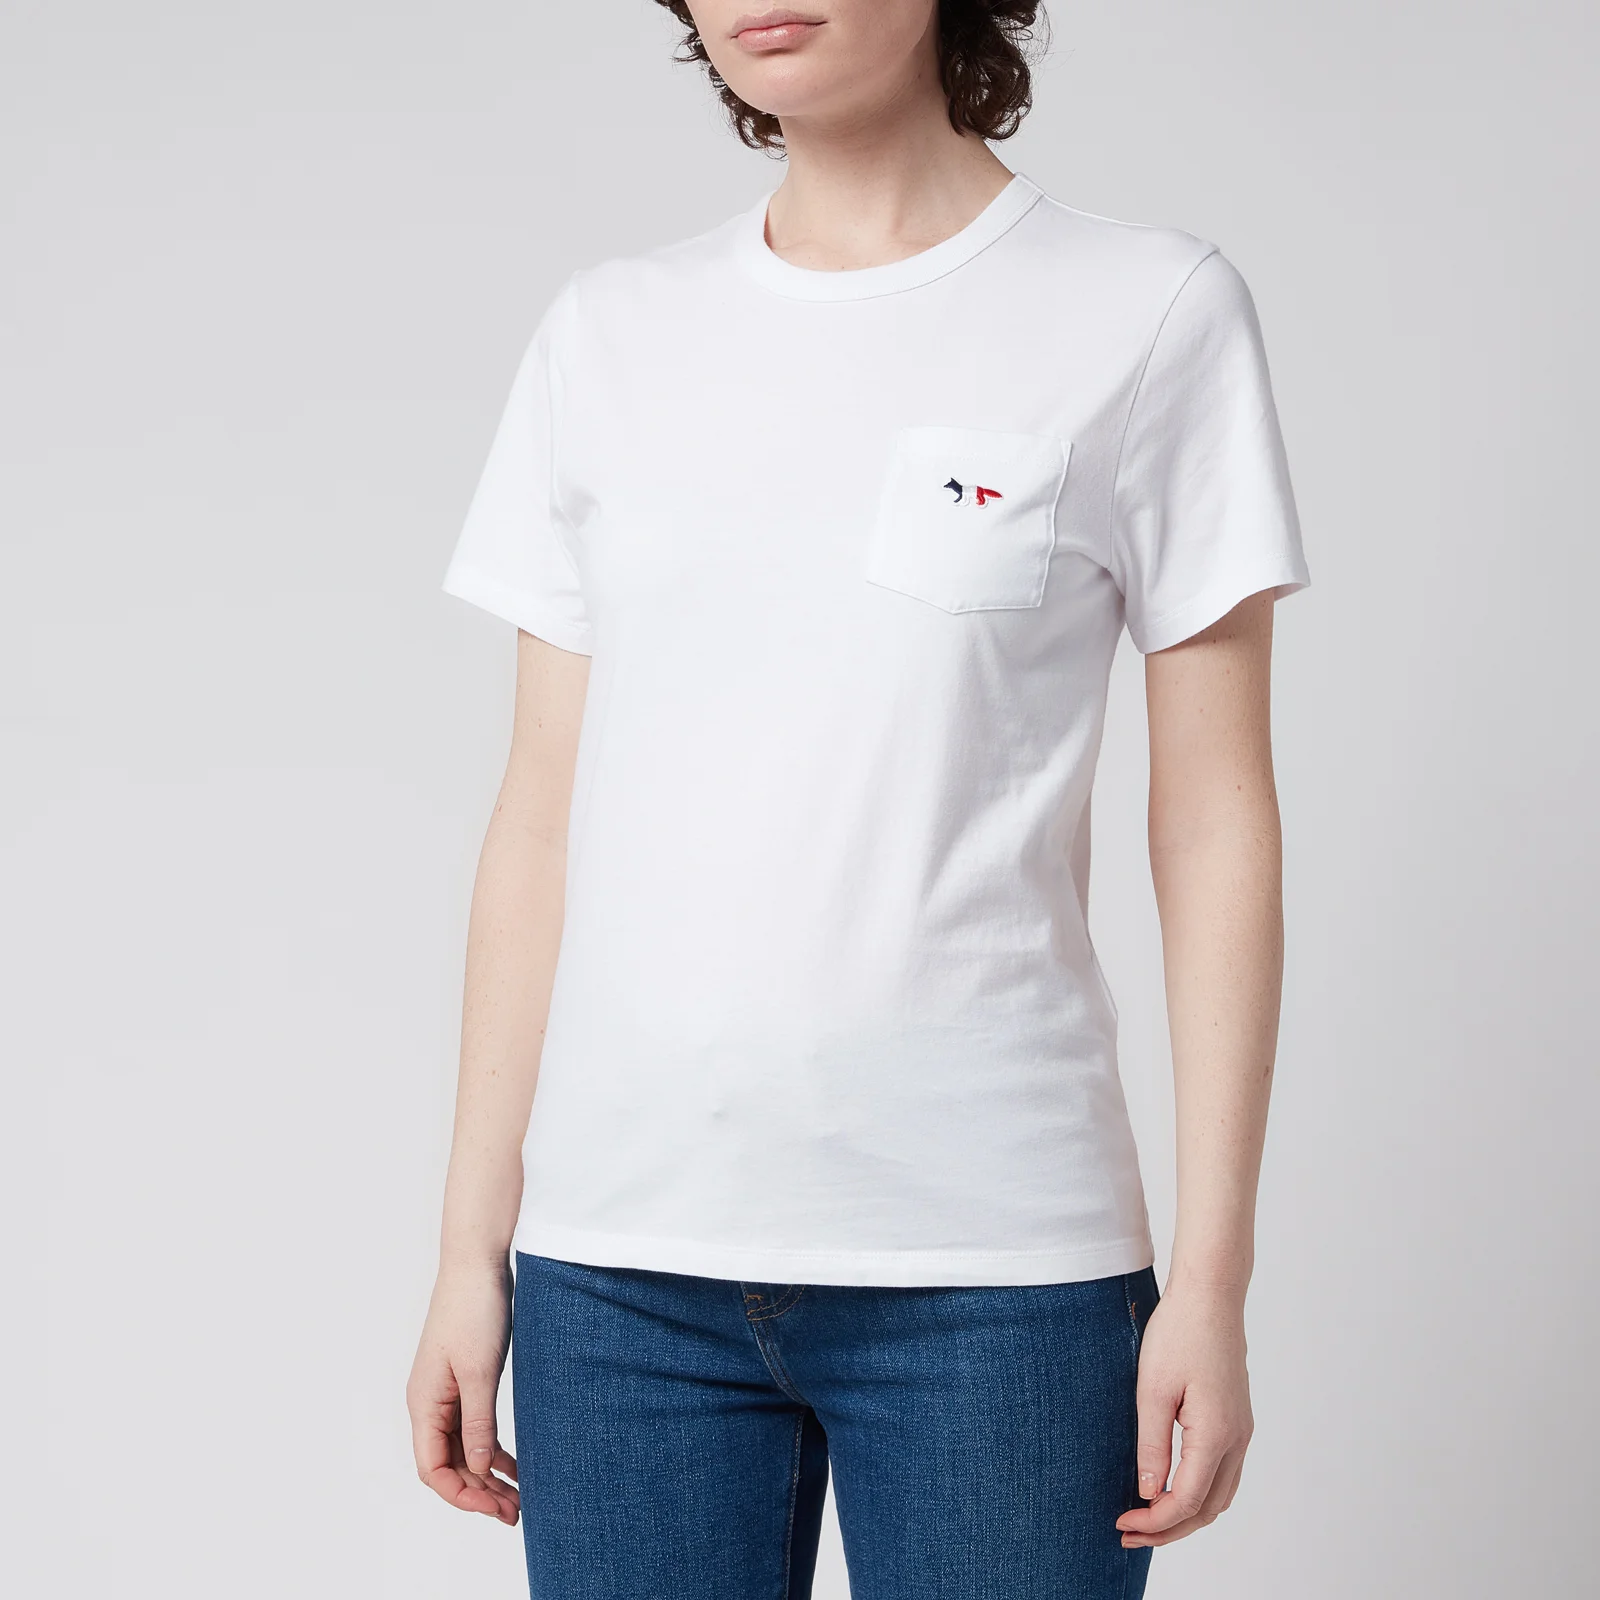 Maison Kitsuné Women's Tricolor Fox Patch Pocket T-Shirt - White Image 1